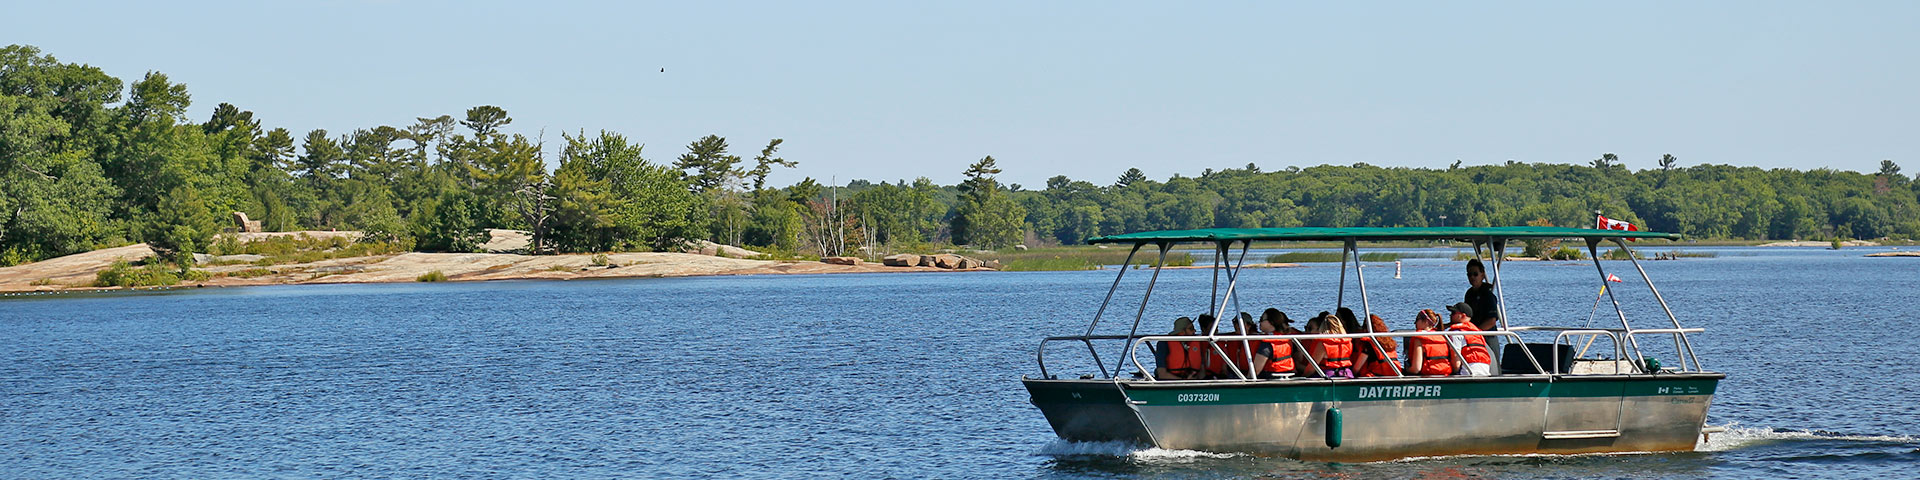 Les parcs Daytripper bateau transporte des passagers à l'île.